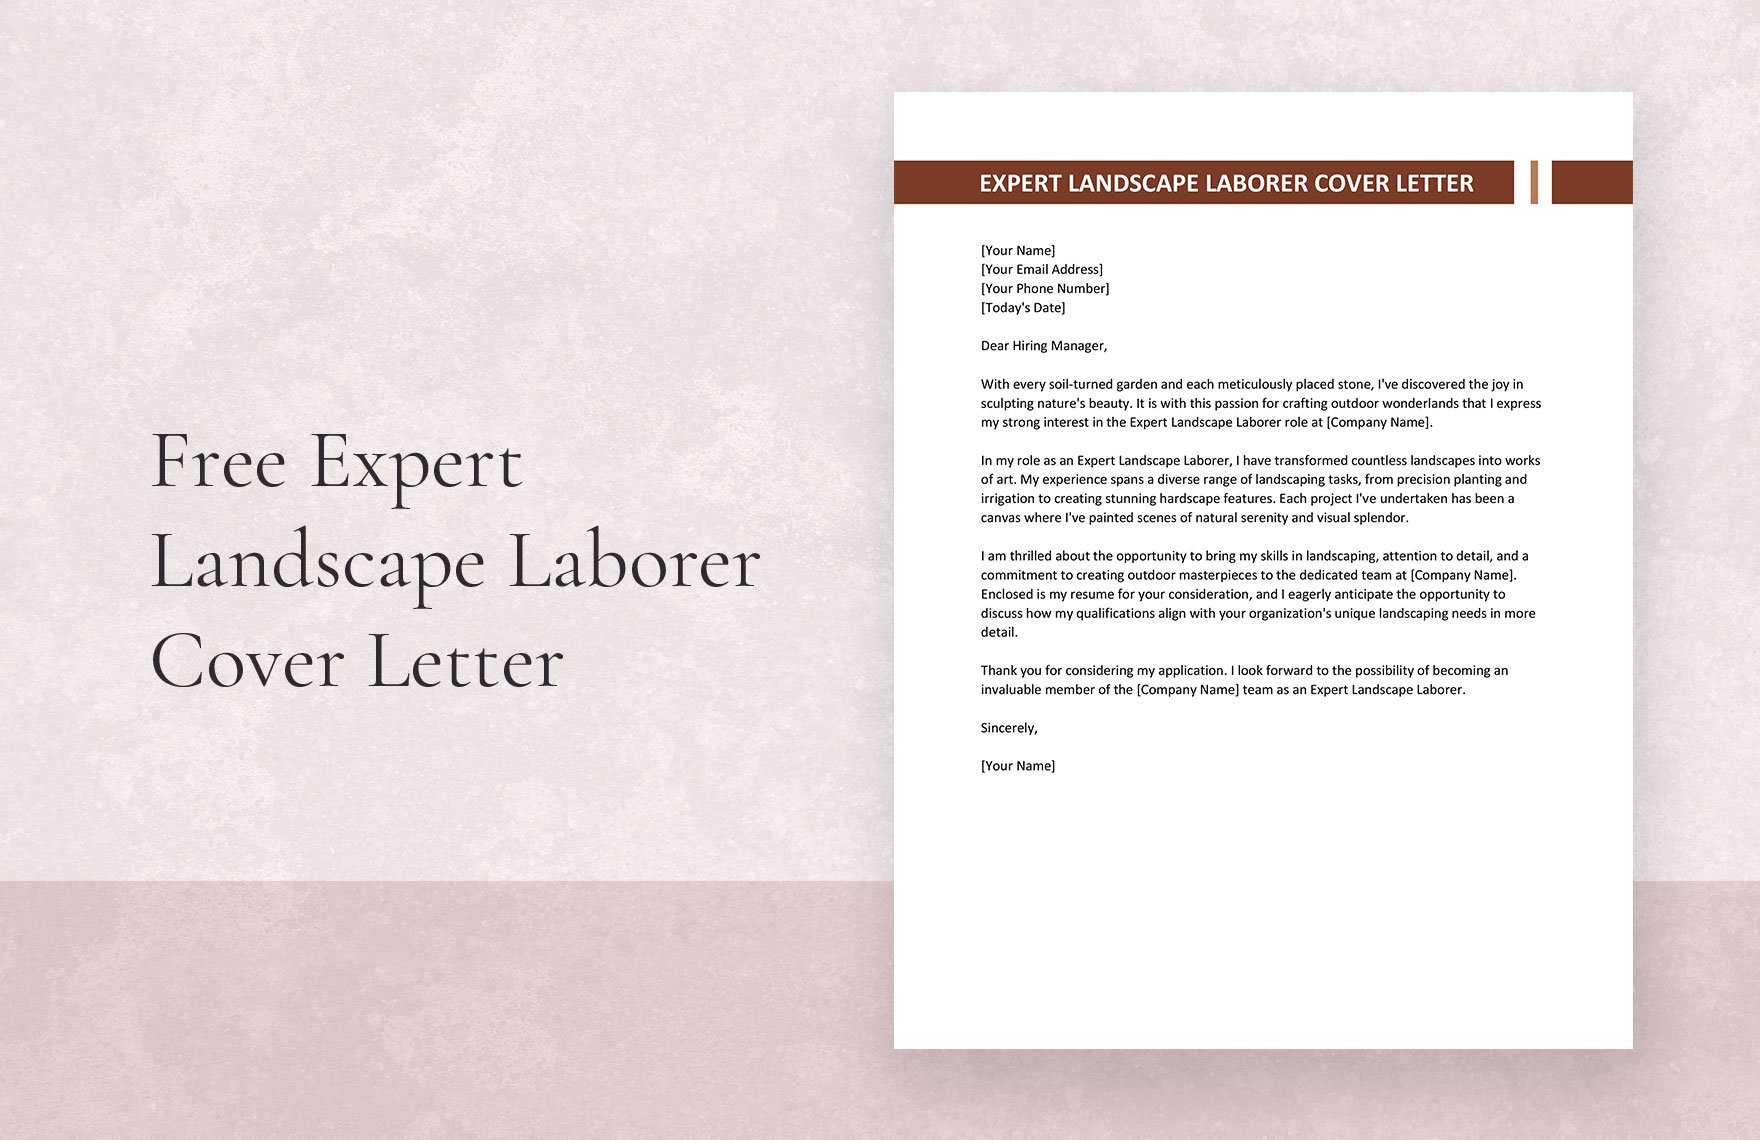 Expert Landscape Laborer Cover Letter in Word, Google Docs